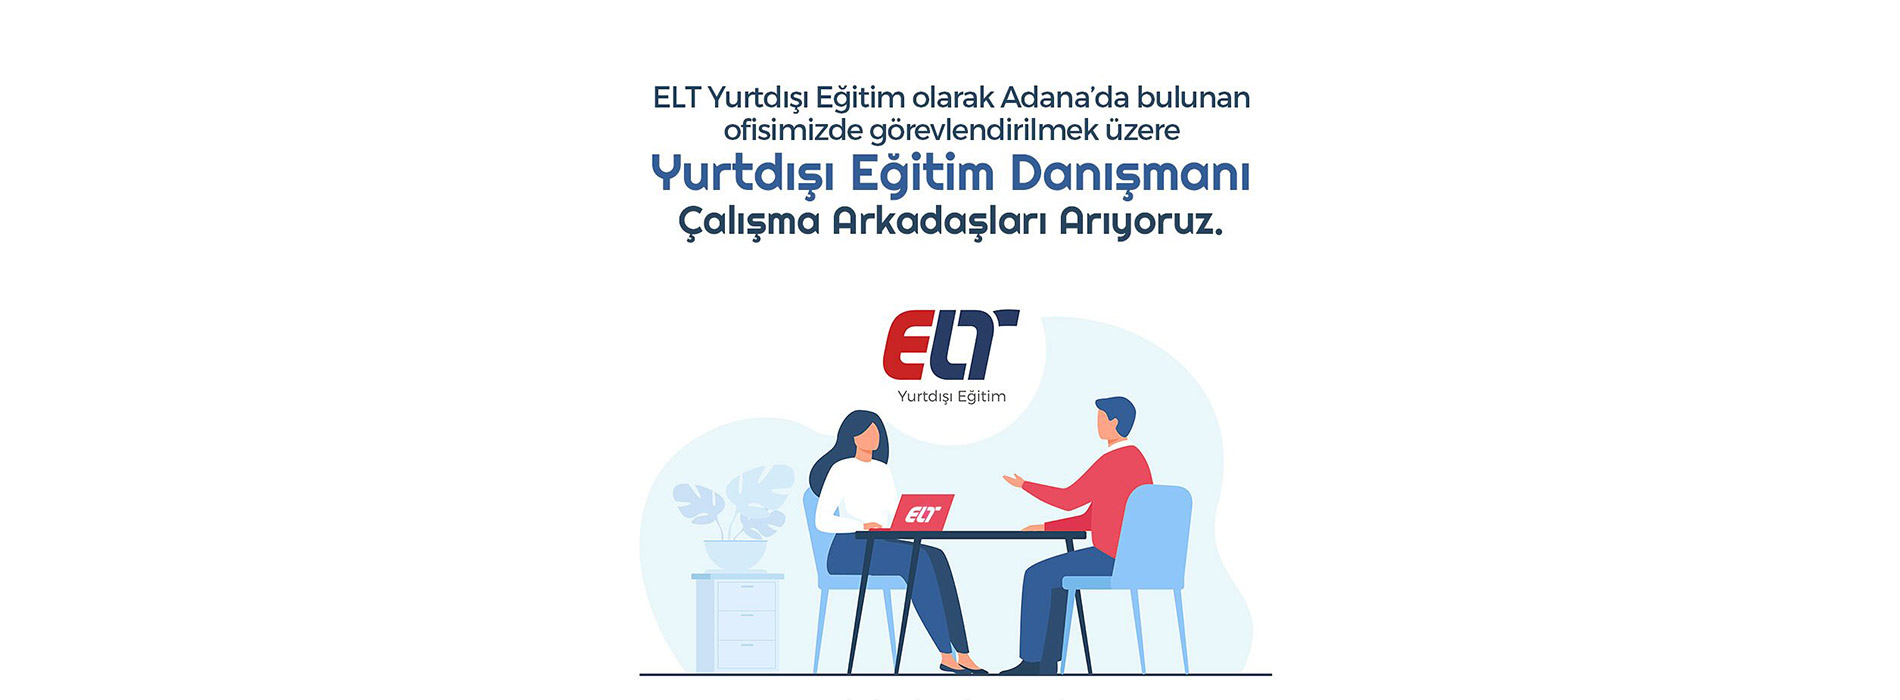 Yurtdışı Eğitim Danışmanı – Adana